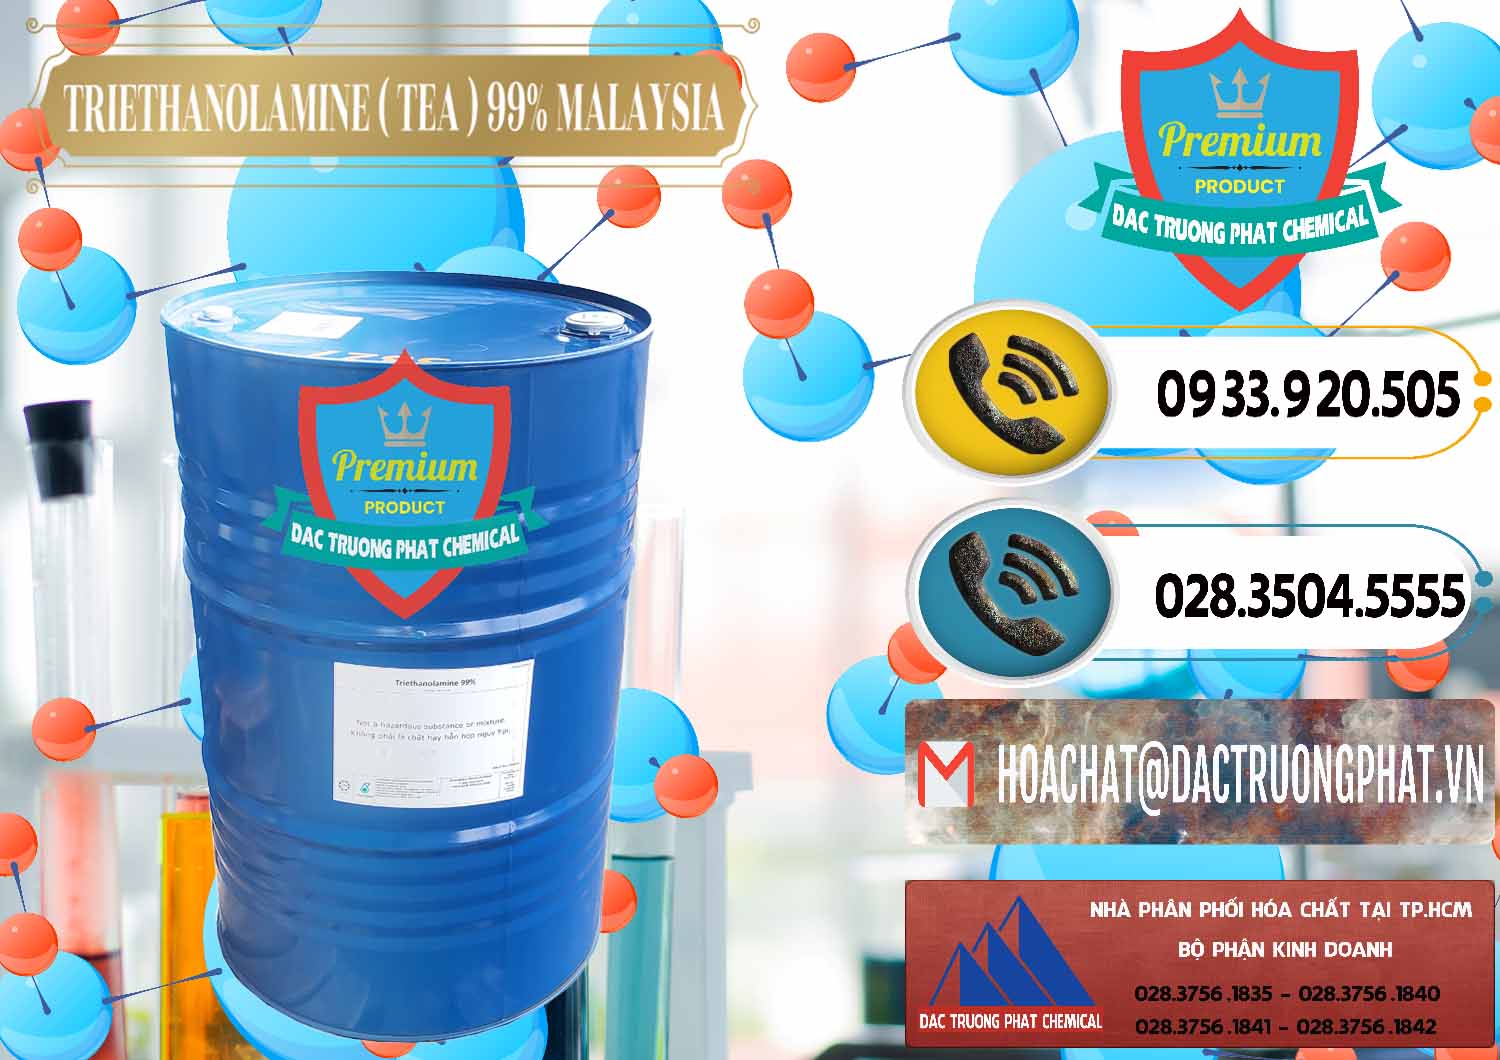 Cty chuyên bán ( phân phối ) TEA - Triethanolamine 99% Mã Lai Malaysia - 0323 - Cty nhập khẩu ( phân phối ) hóa chất tại TP.HCM - hoachatdetnhuom.vn